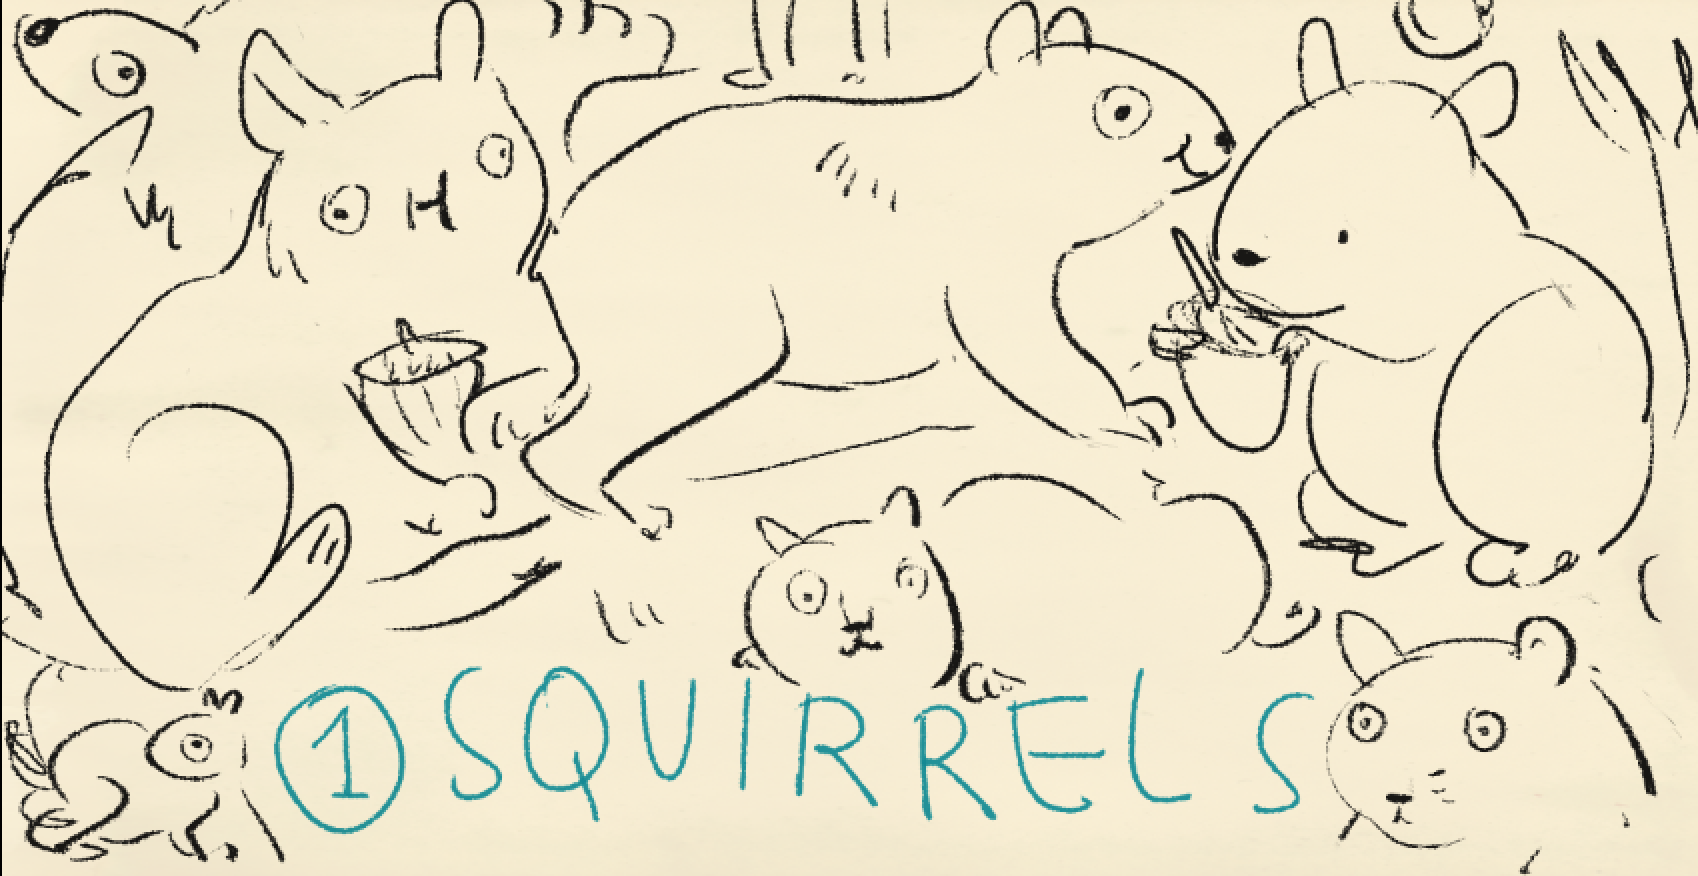 Squirrels!!